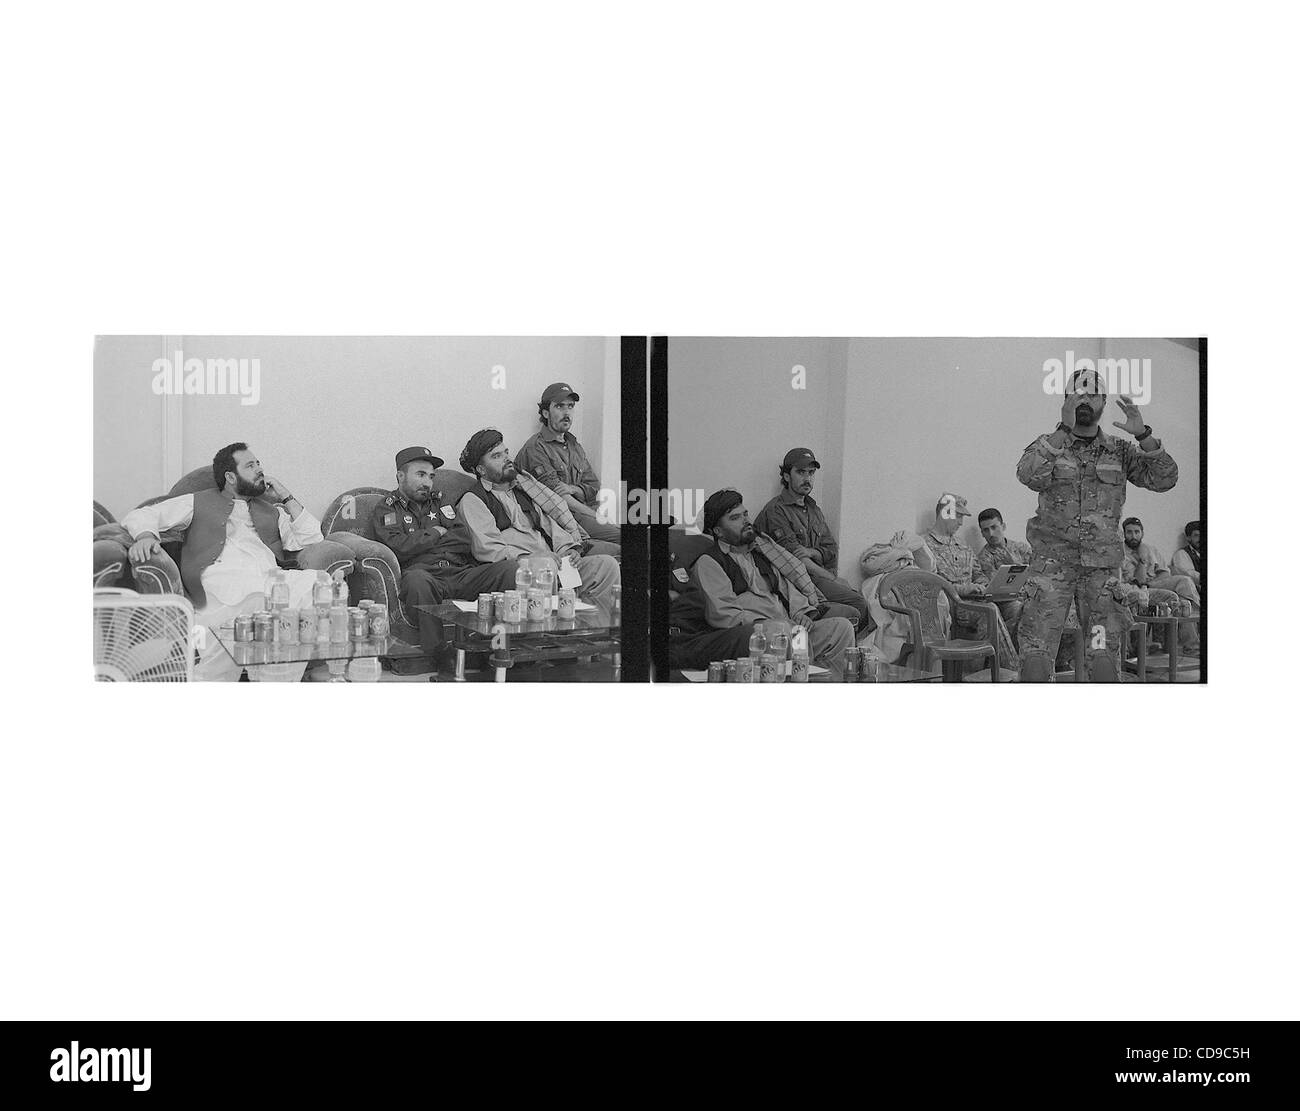 Jul 01, 2010 - L'Afghanistan Paktika, - des représentants du gouvernement afghan et de la Police nationale afghane écouter un commando parler à la shura, ou de la réunion, avec les anciens. (Crédit Image : © Bill Putnam/ZUMAPRESS.com) Banque D'Images